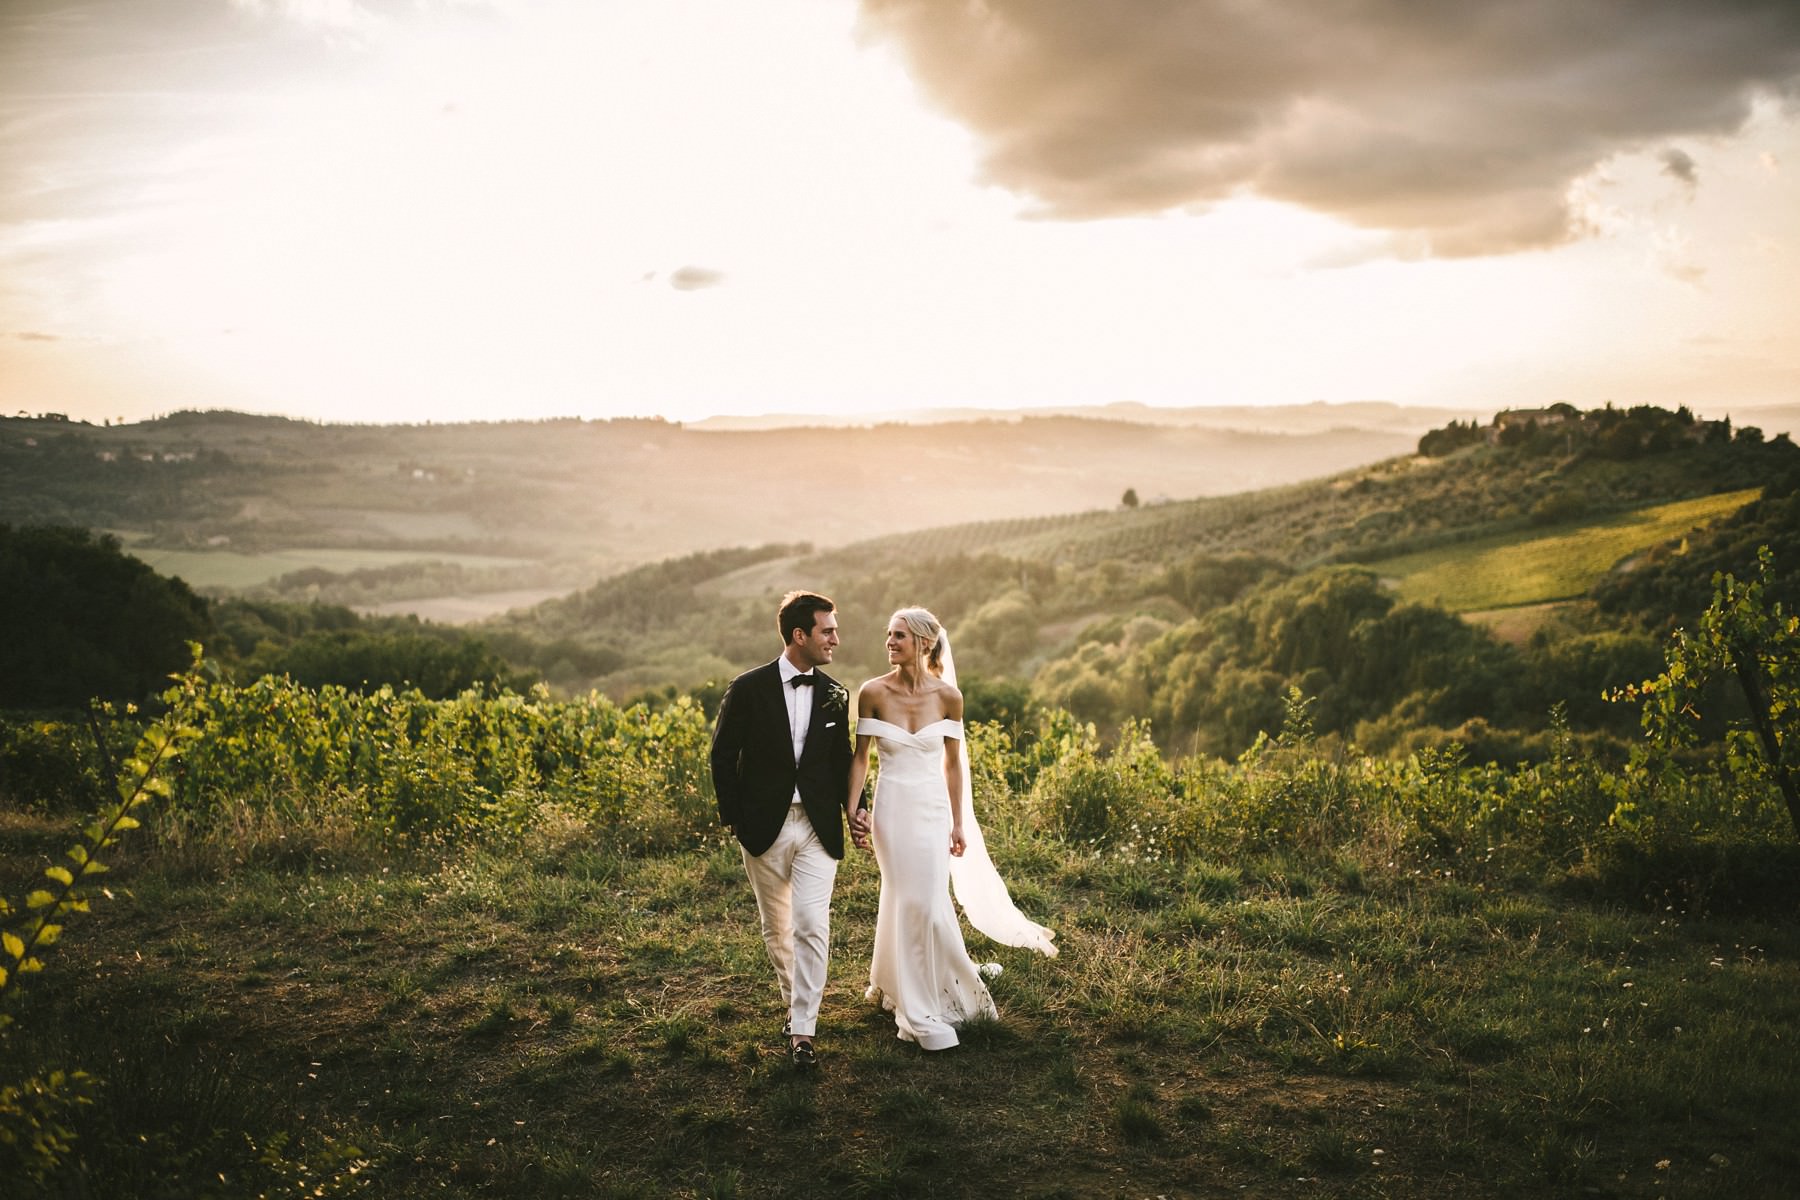 A classy and poetic wedding in Tuscany at Villa Il Poggiale? A dream coming true!